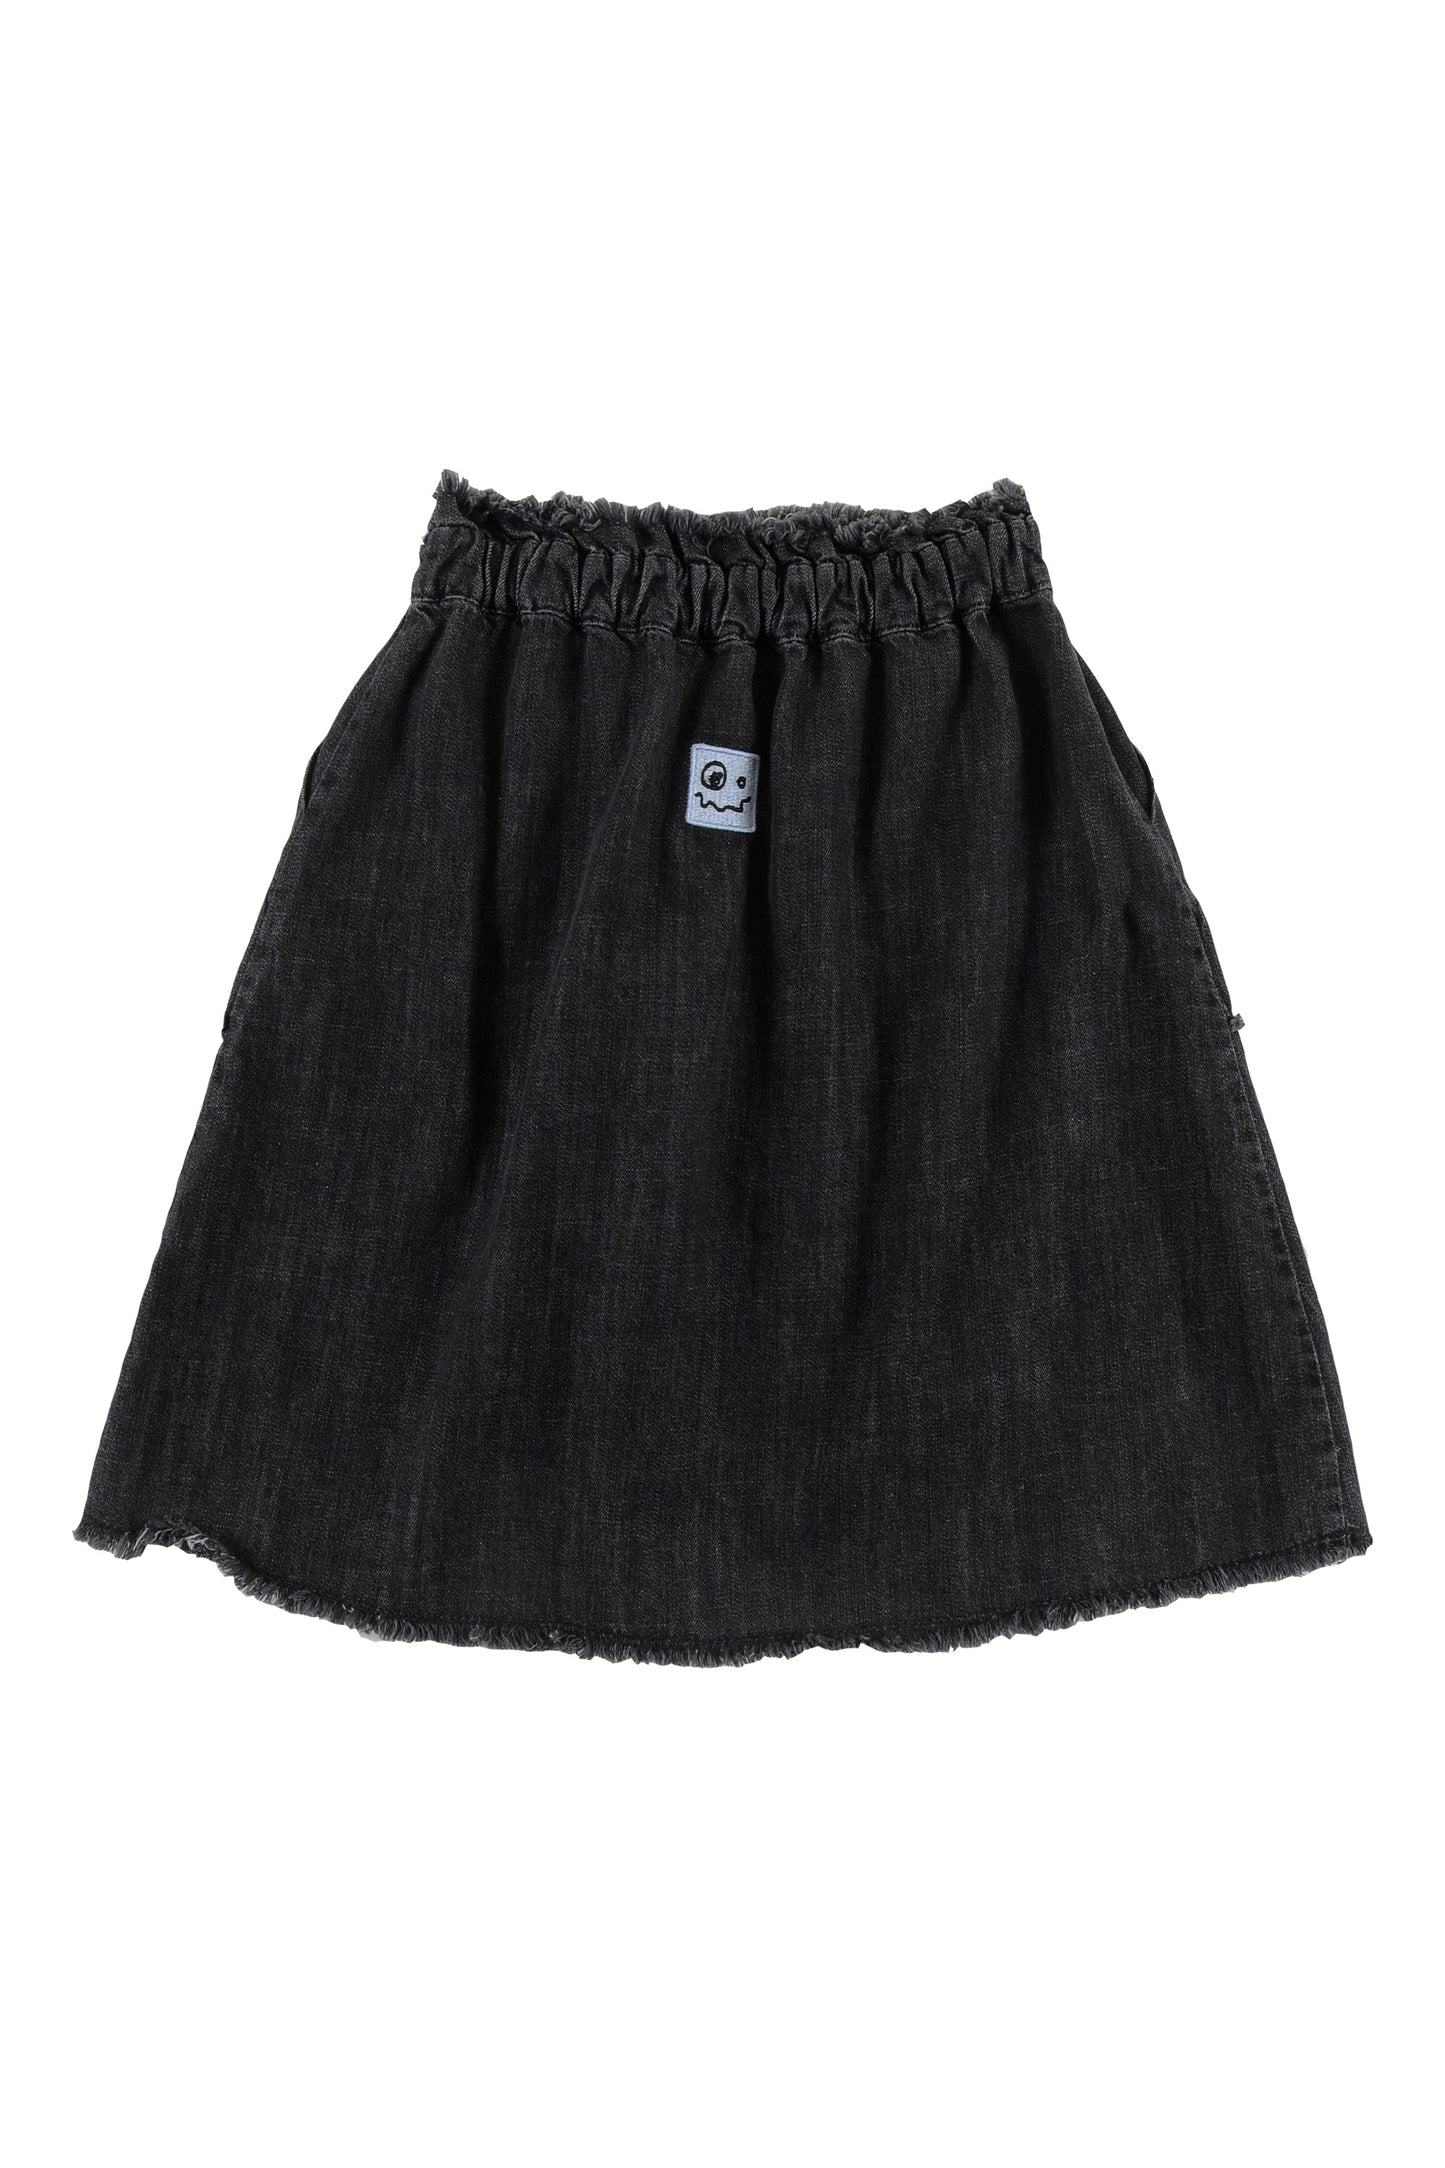 Loud Apparel Relax Cotton Woven Skirt